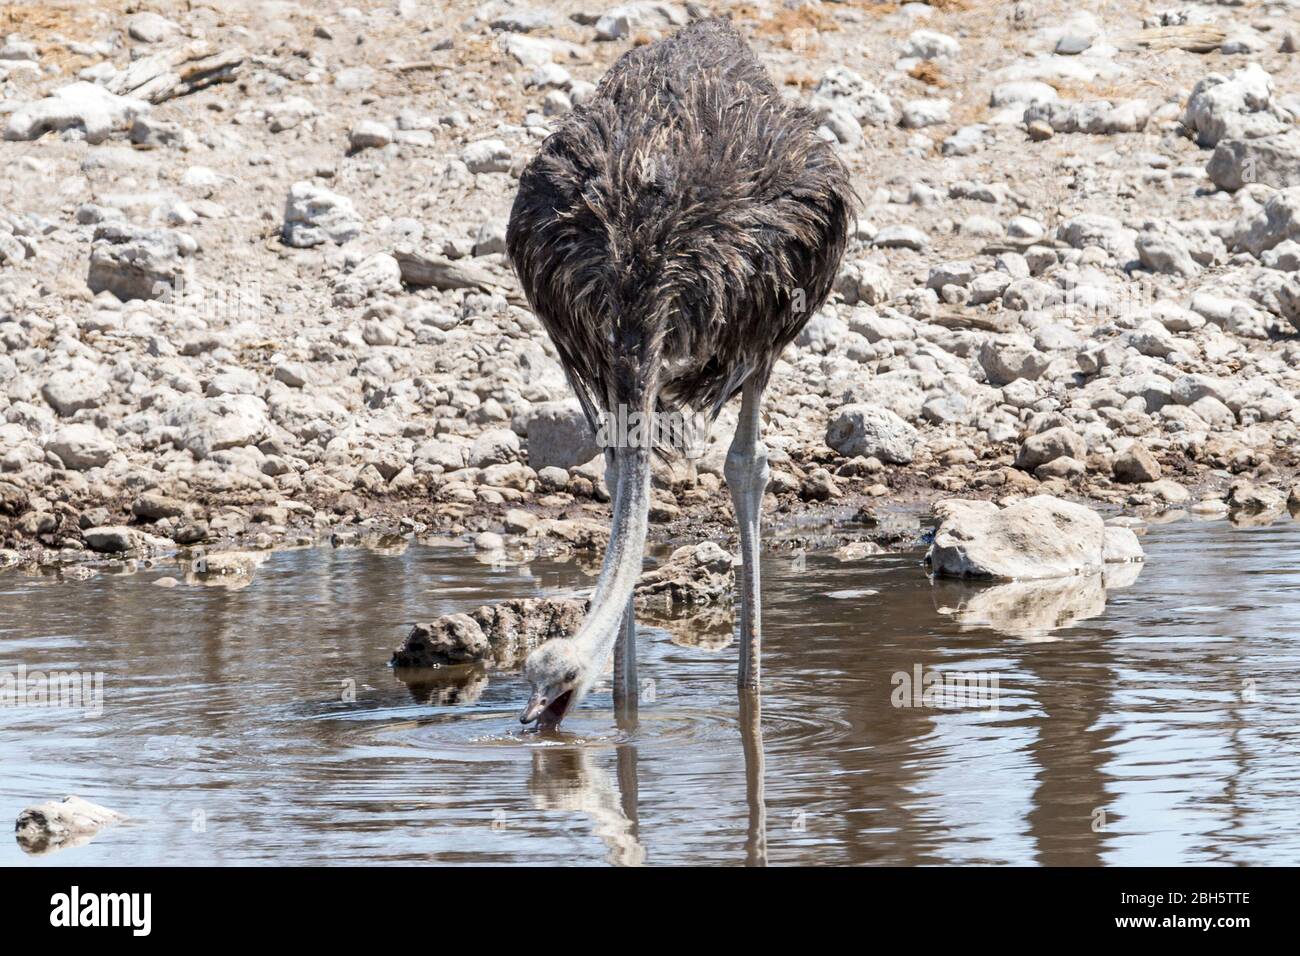 Female Ostrich, drinking at waterhole, Etosha National Park, Namibia, Africa Stock Photo